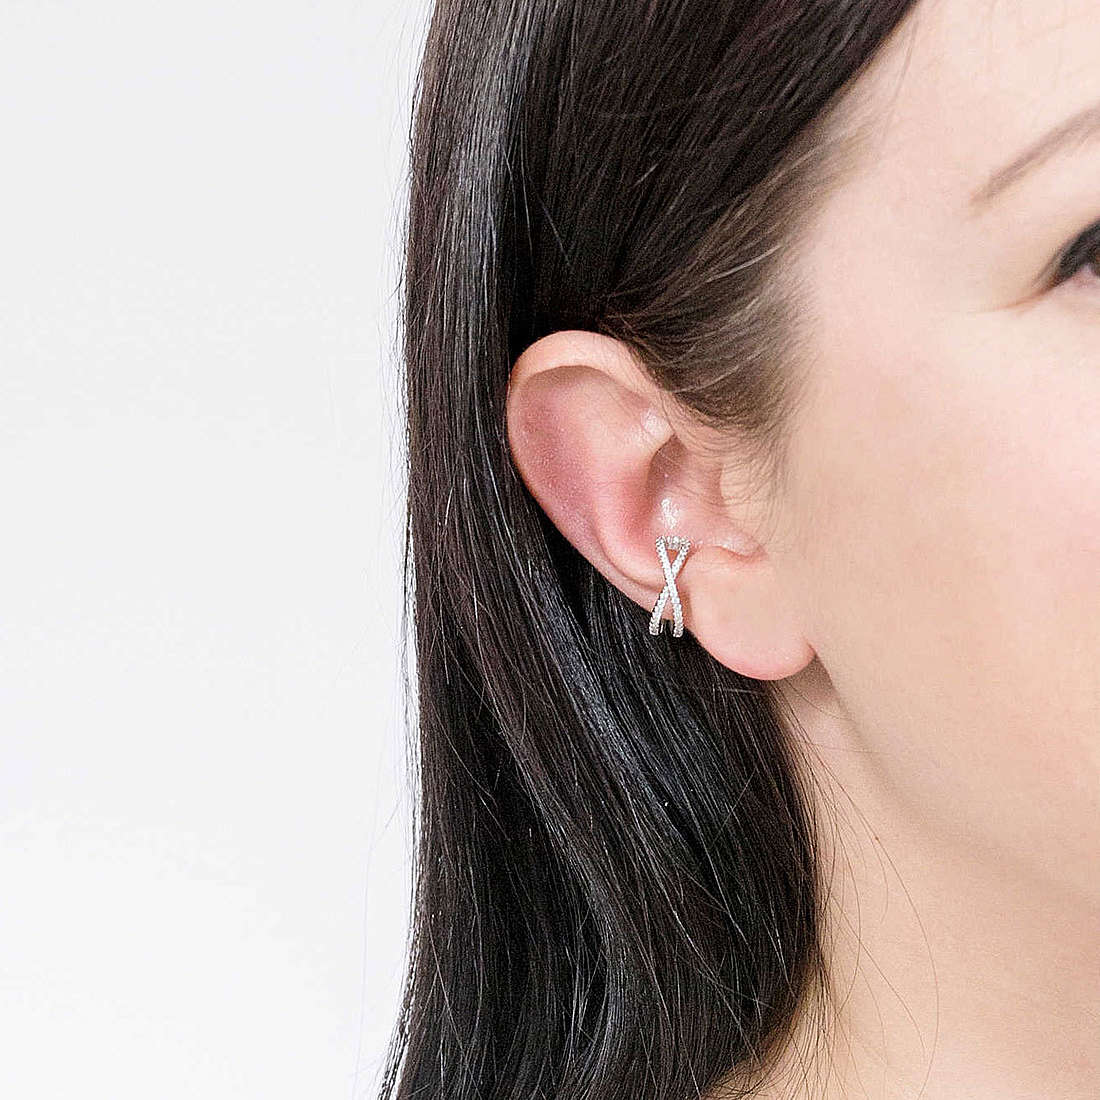 Rebecca earrings Golden ear woman SGEOBB09 wearing